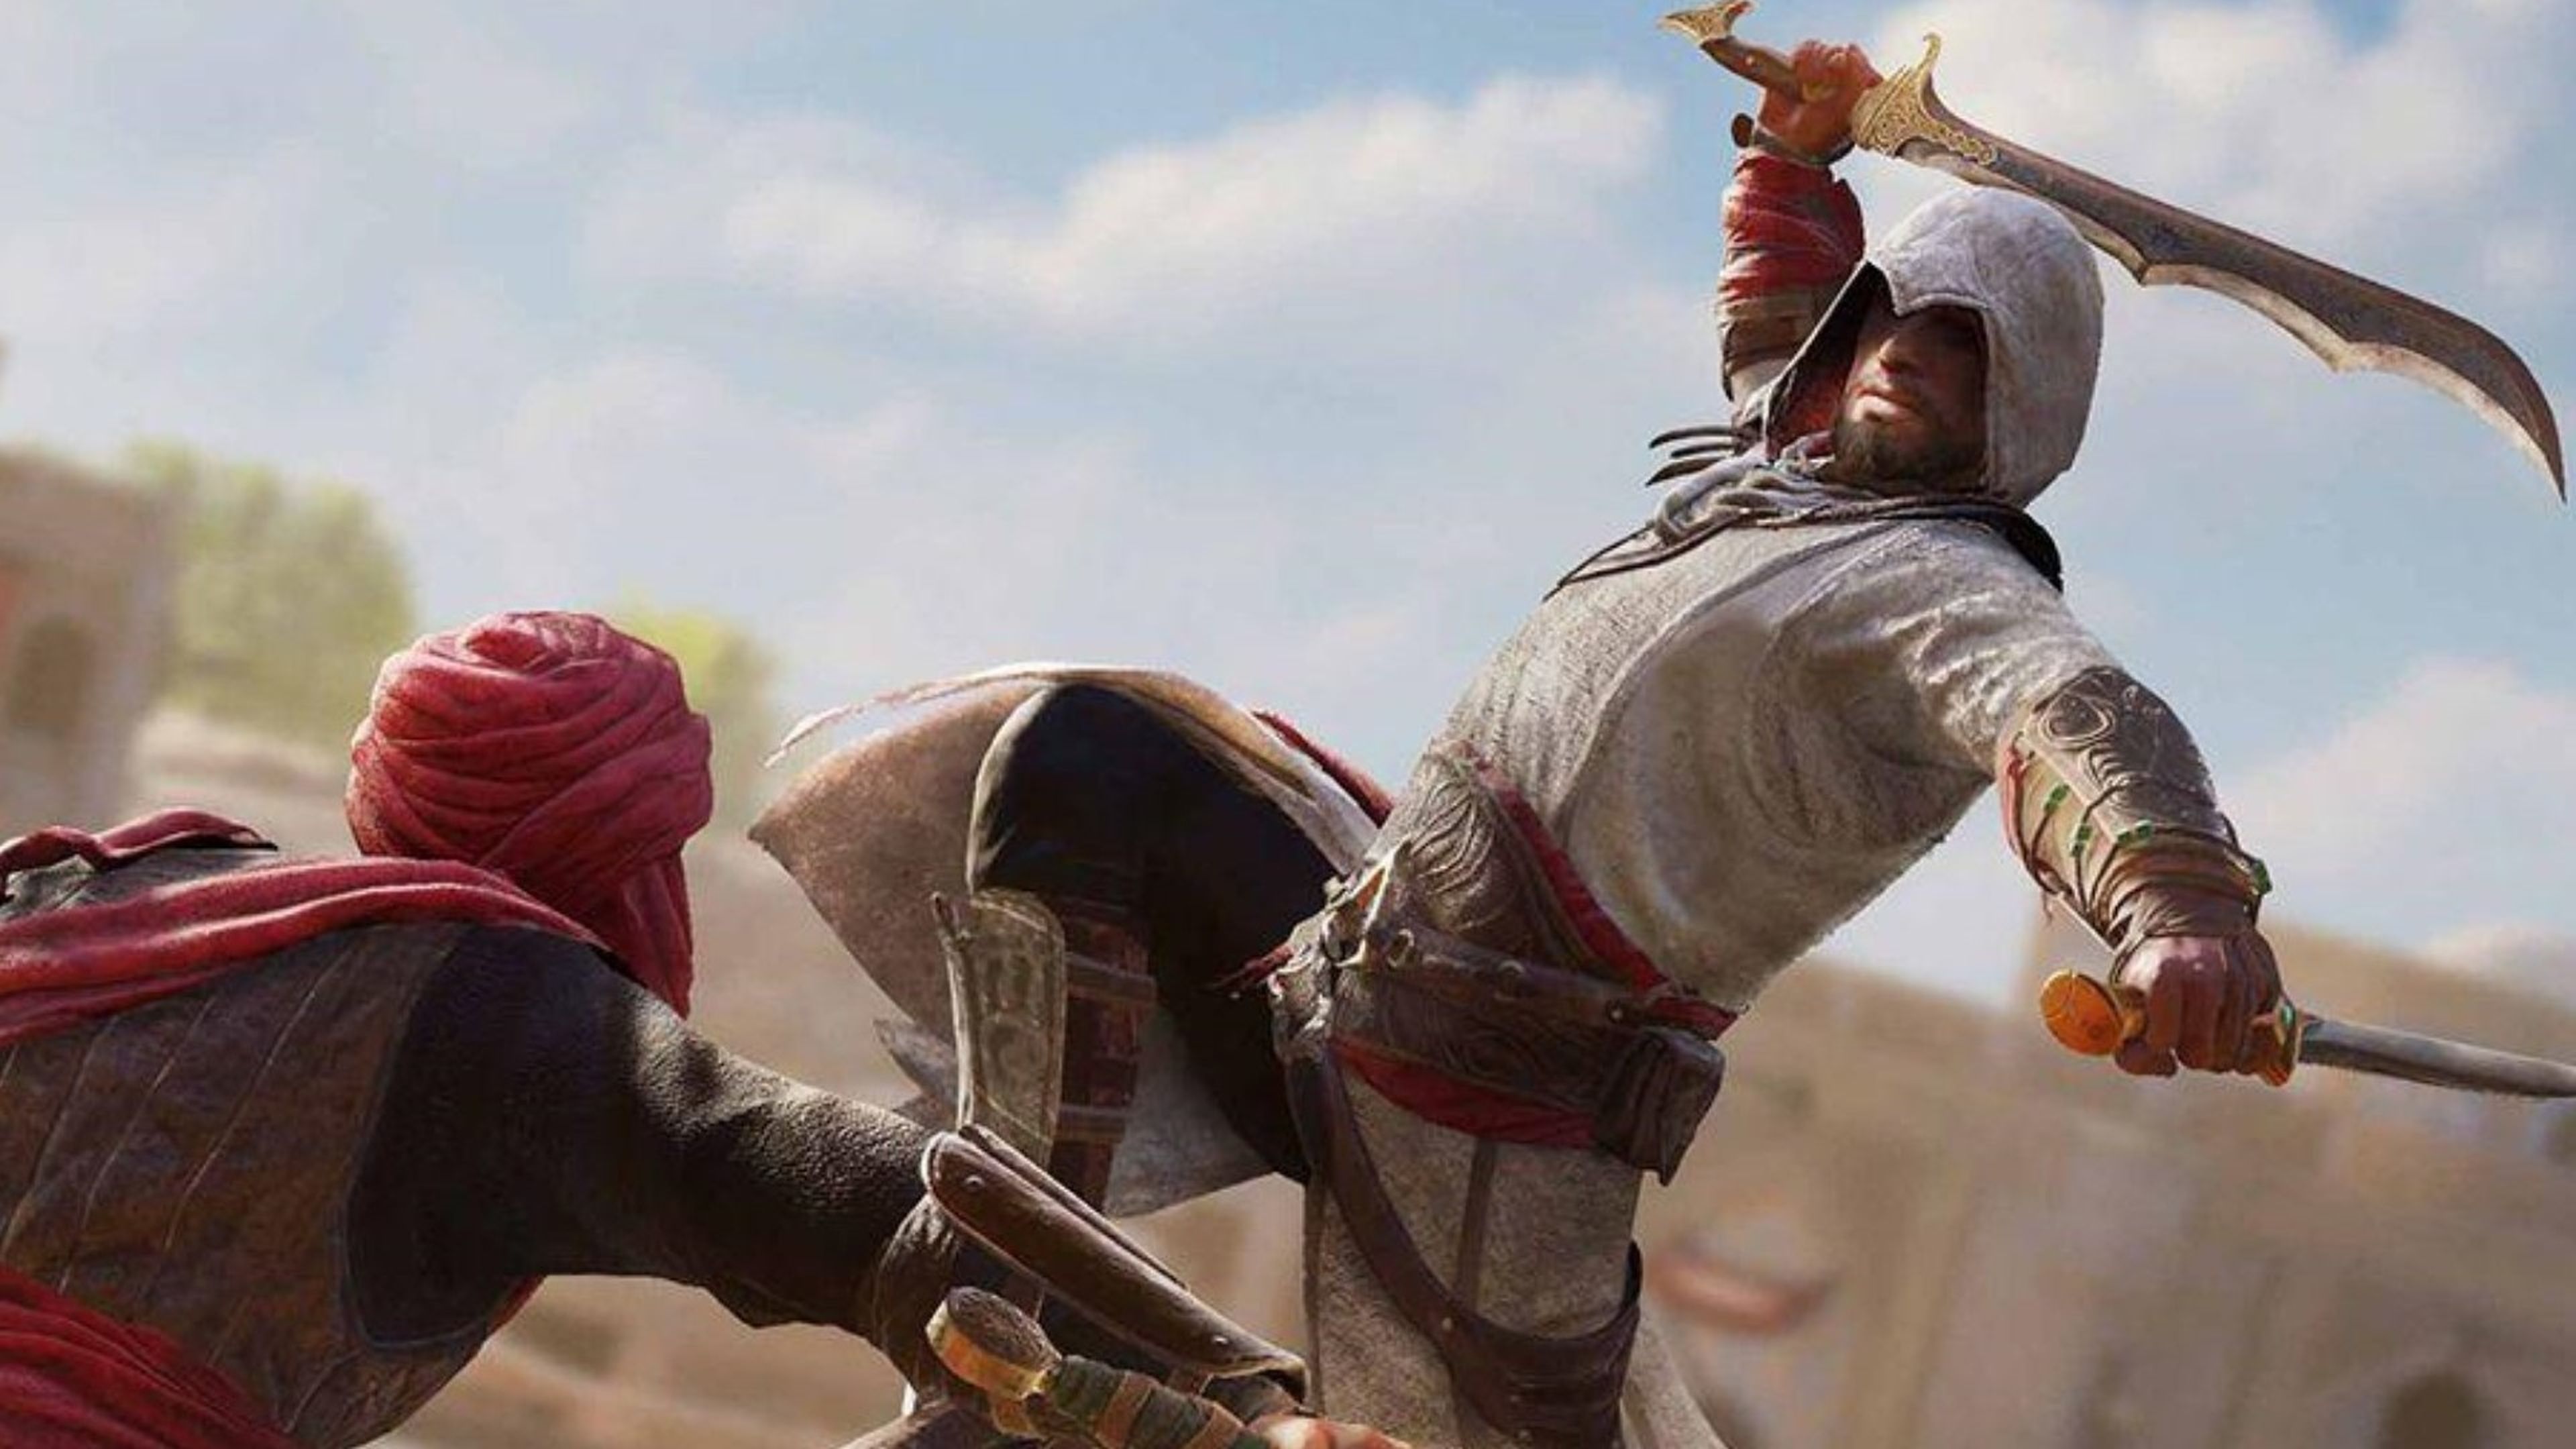 Requisitos mínimos e recomendados de Assassin's Creed Origins